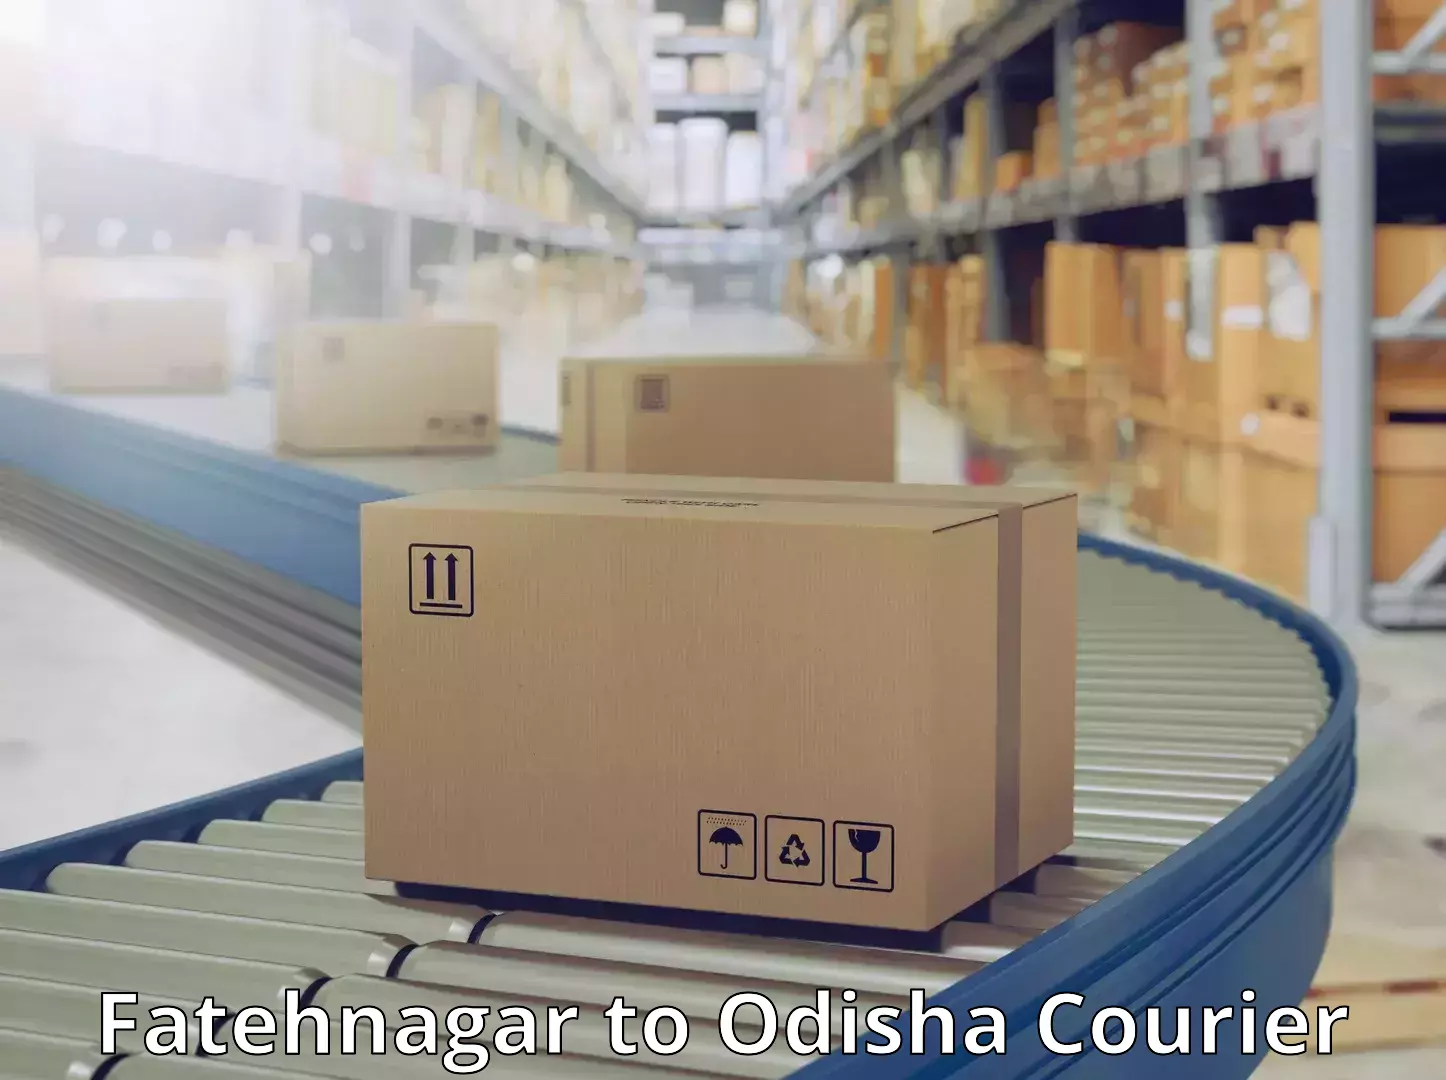 Efficient freight service Fatehnagar to Odisha